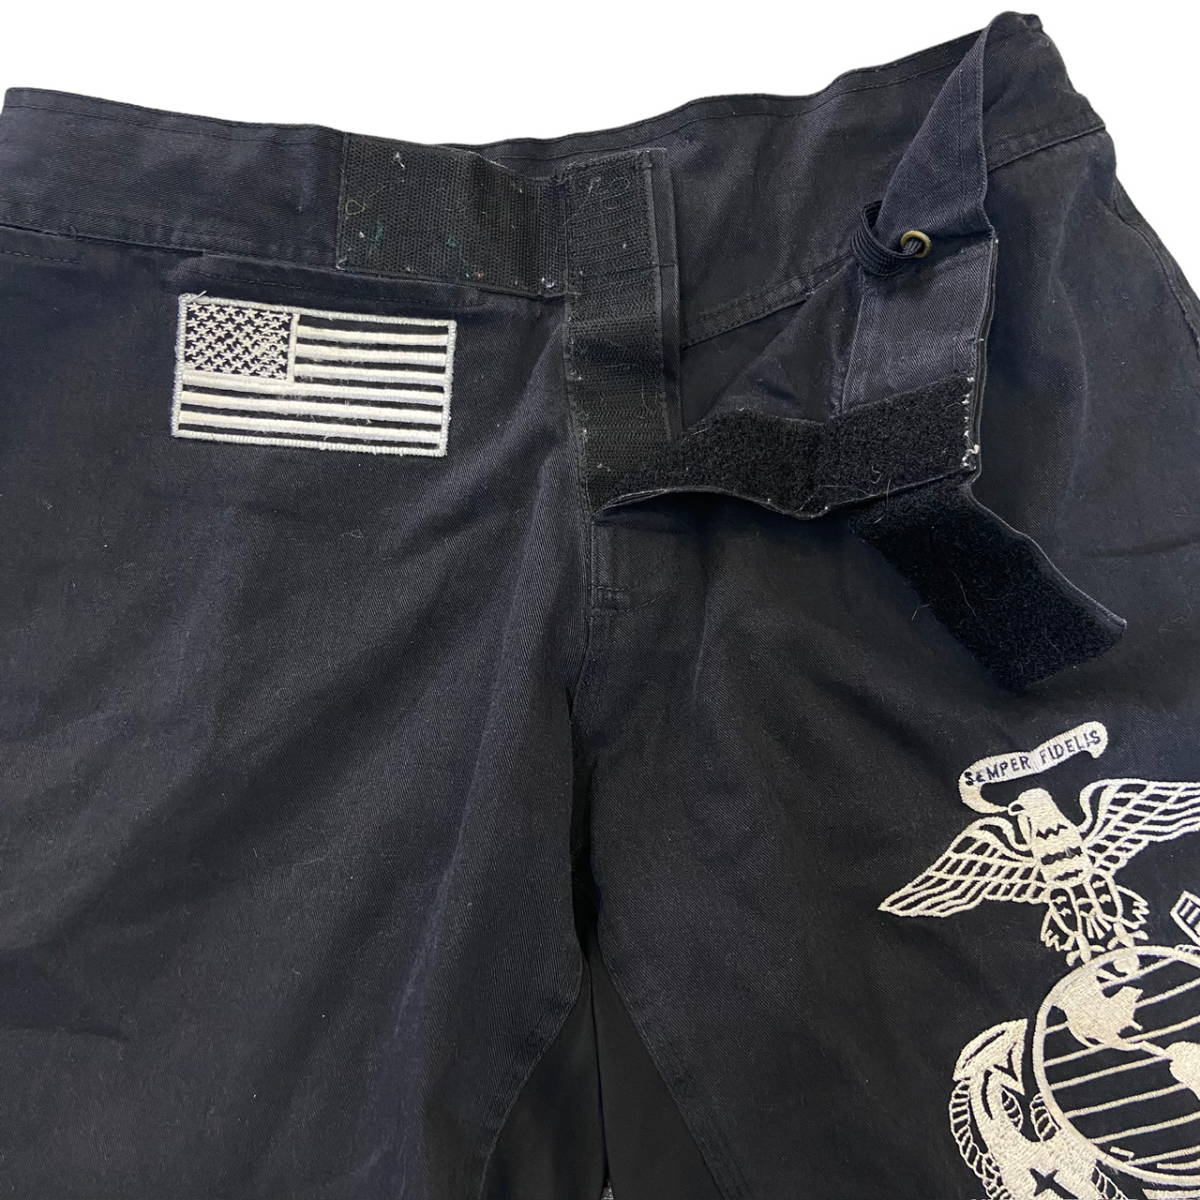 米軍 USMC MARINES ハーフパンツ M ブラック ロゴ 刺繍 星条旗 ショーツ ショートパンツ パンツ アメリカ海兵隊 ミリタリー _画像7